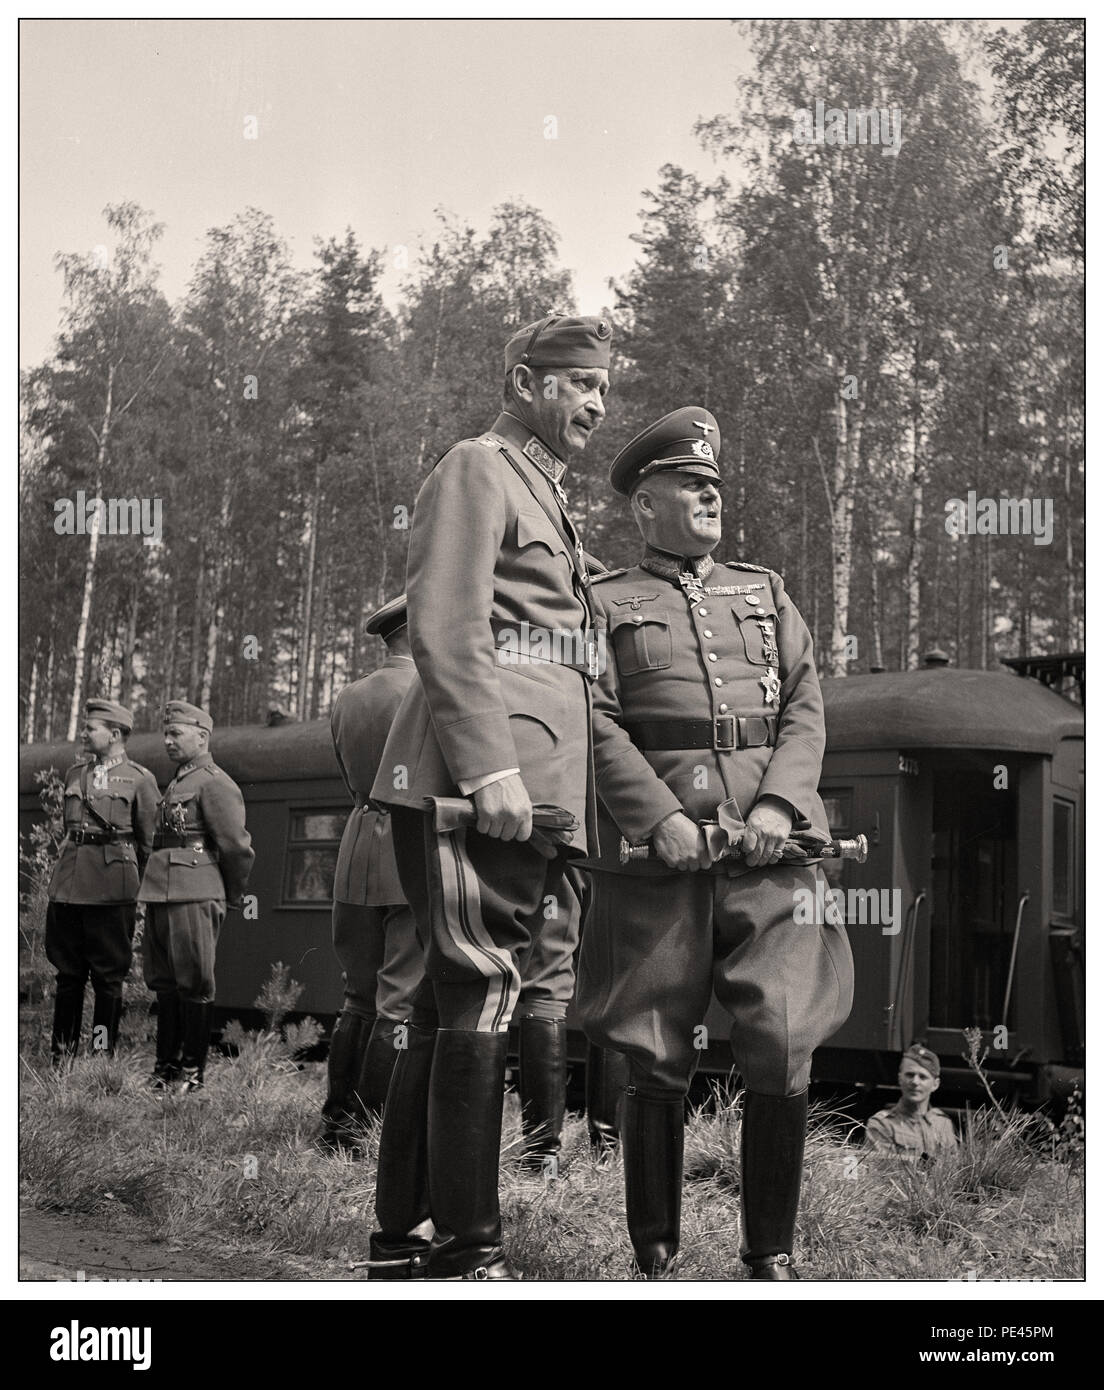 MANNERHEIM/KEITEL warten auf Adolf Hitler. Adolf Hitler hat beschlossen, gegen Finnland am 4. Juni 1942 zu besuchen, der angeblich Mannerheim an seinem 75. Geburtstag zu gratulieren. Aber Mannerheim wollte ihn in seinem Hauptquartier in Mikkeli oder in Helsinki zu erfüllen, als es wie ein Staatsbesuch gewesen wäre. Das Treffen fand in der Nähe von Imatra, in der süd-östlichen Finnland, und war in der Geheimhaltung angeordnet. Von Immola Flugplatz, Hitler, von Präsident Ryti begleitet, an den Ort, wo Mannerheim an einem gleisanschluss Warten angetrieben wurde. Die Sitzung war ergebnislos... Stockfoto